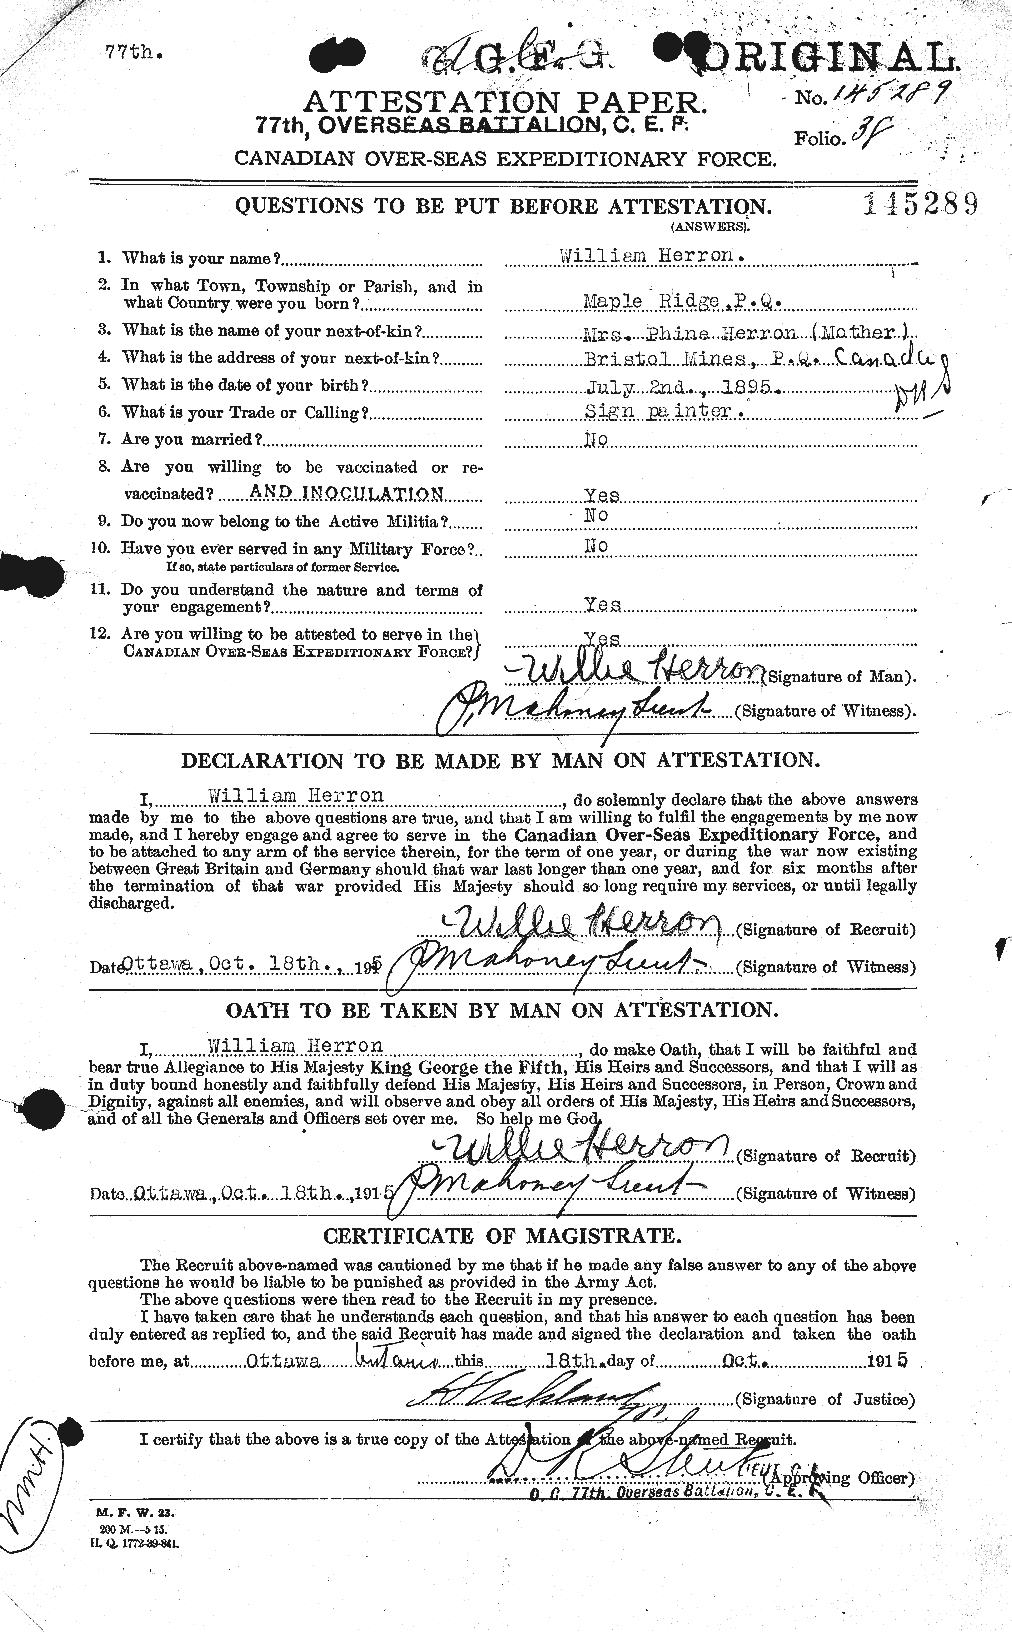 Dossiers du Personnel de la Première Guerre mondiale - CEC 390388a